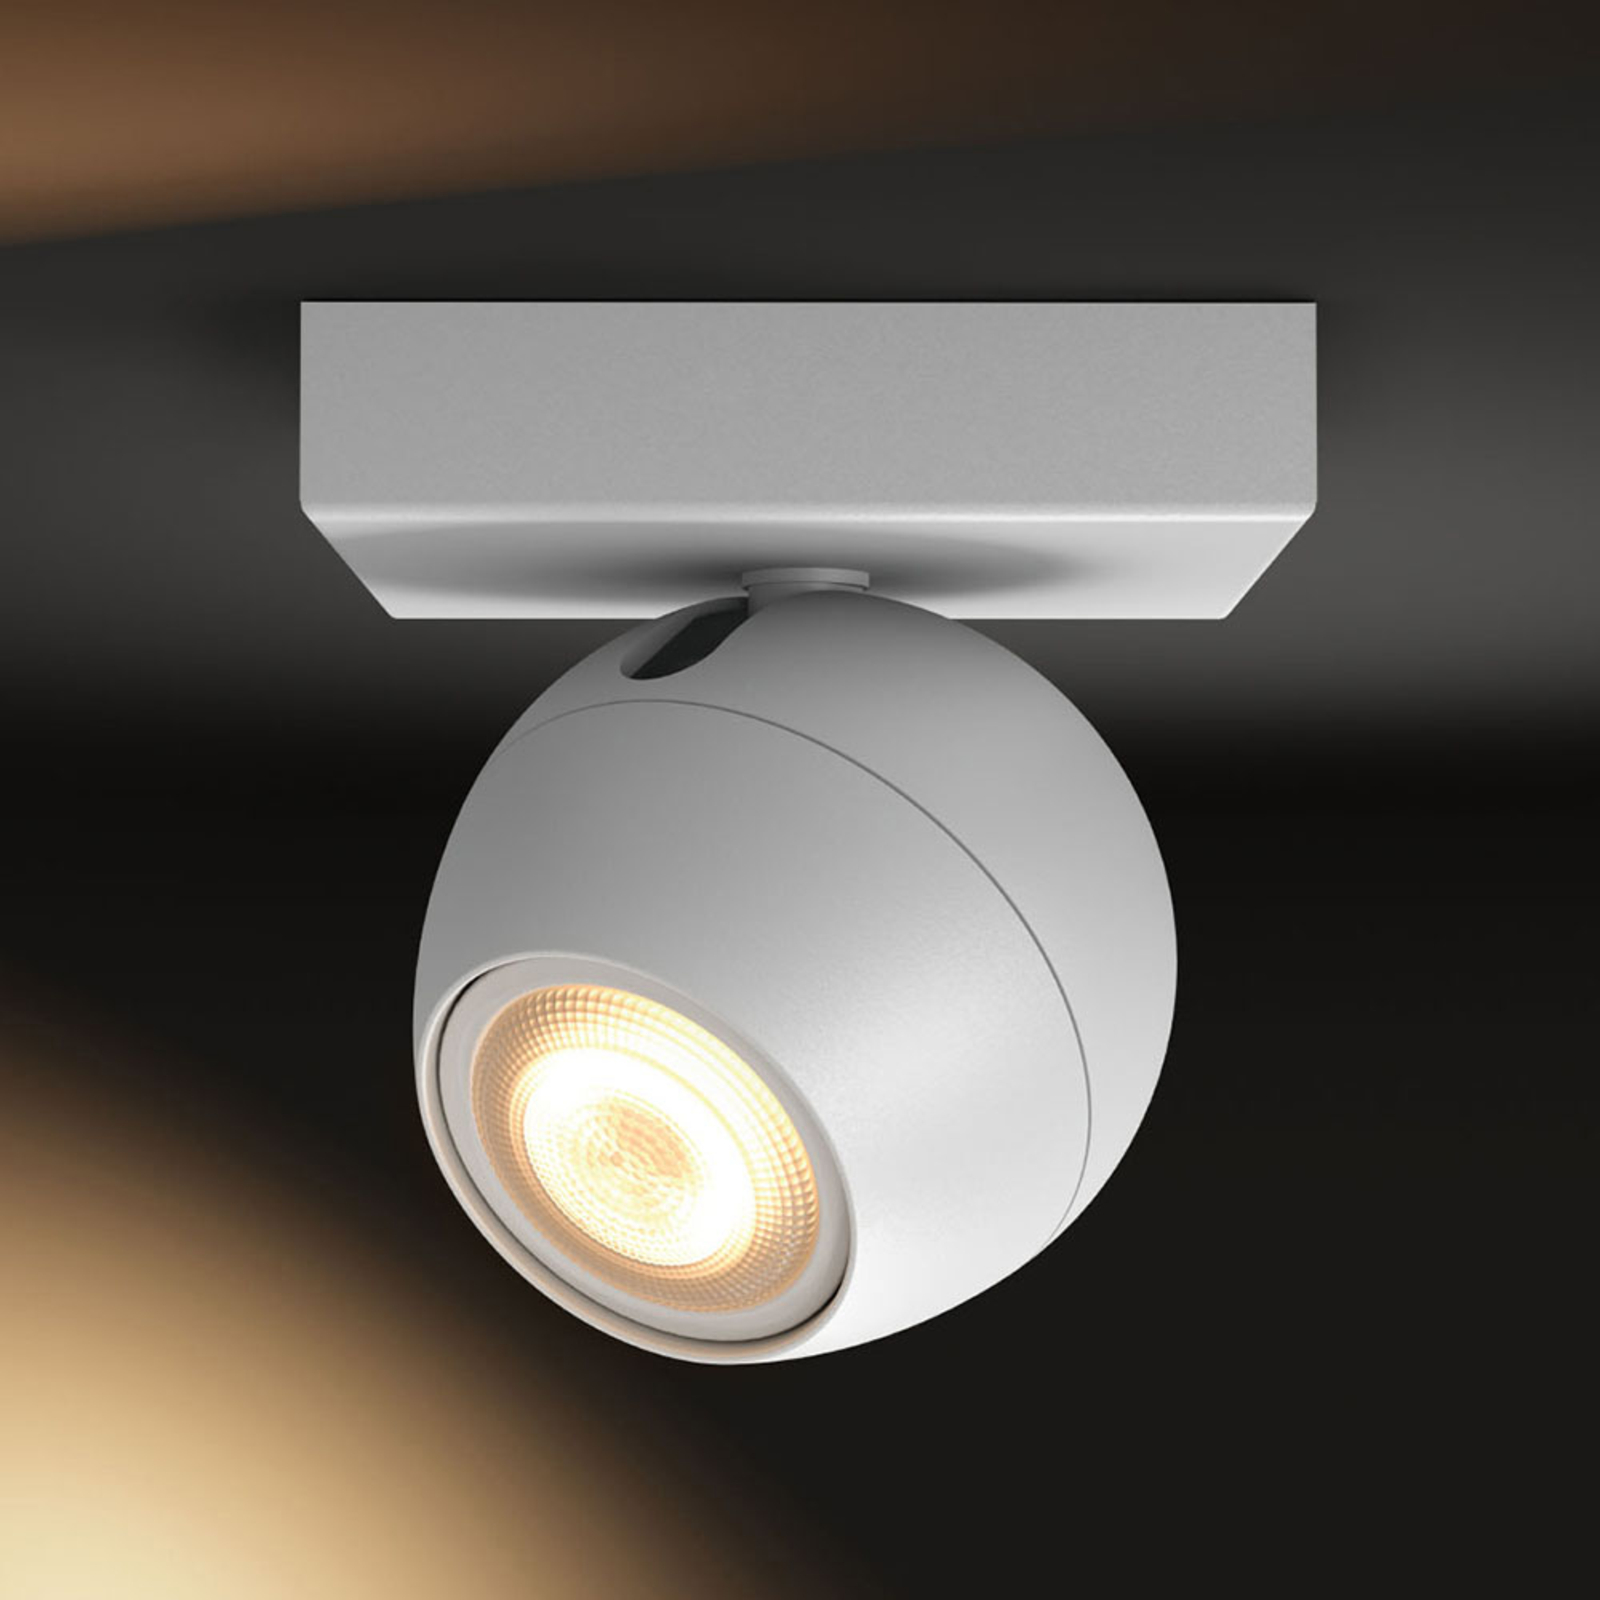 Hue Buckram LED-spot wit uitbreiding | Lampen24.be